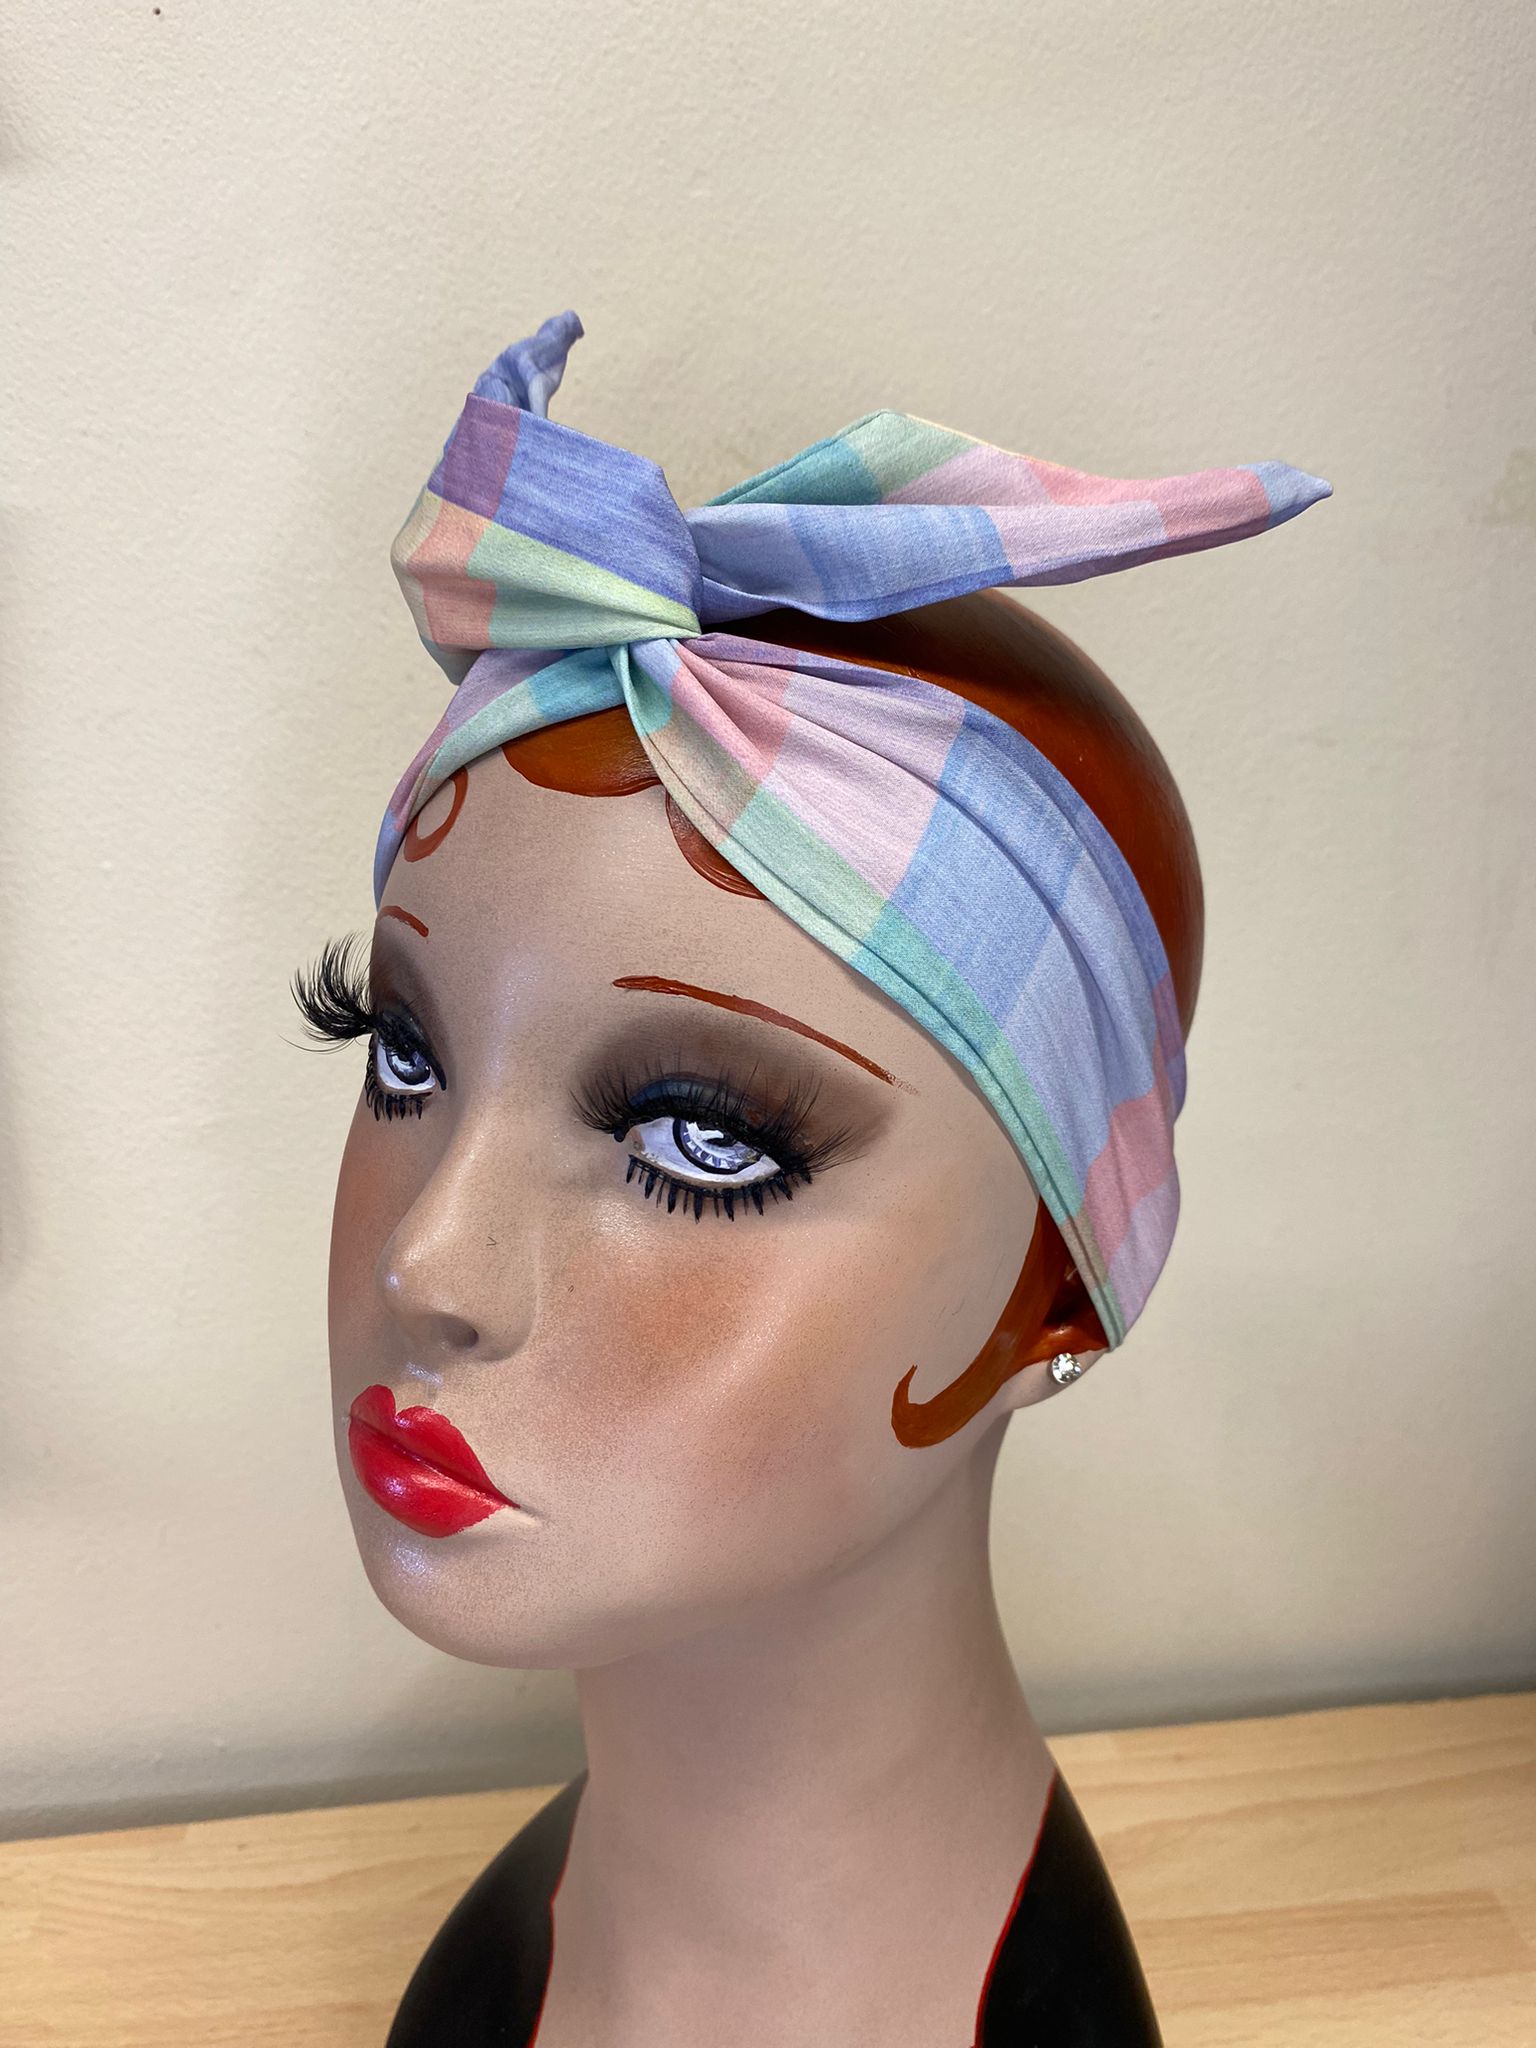 Twist &amp; Go .. Haarband mit Draht (kein umständliches Knoten oder Schleifen nötig) 1950er Rockabilly / 1940er Landgirl-Stil .. Mit sommerlichem Karomuster